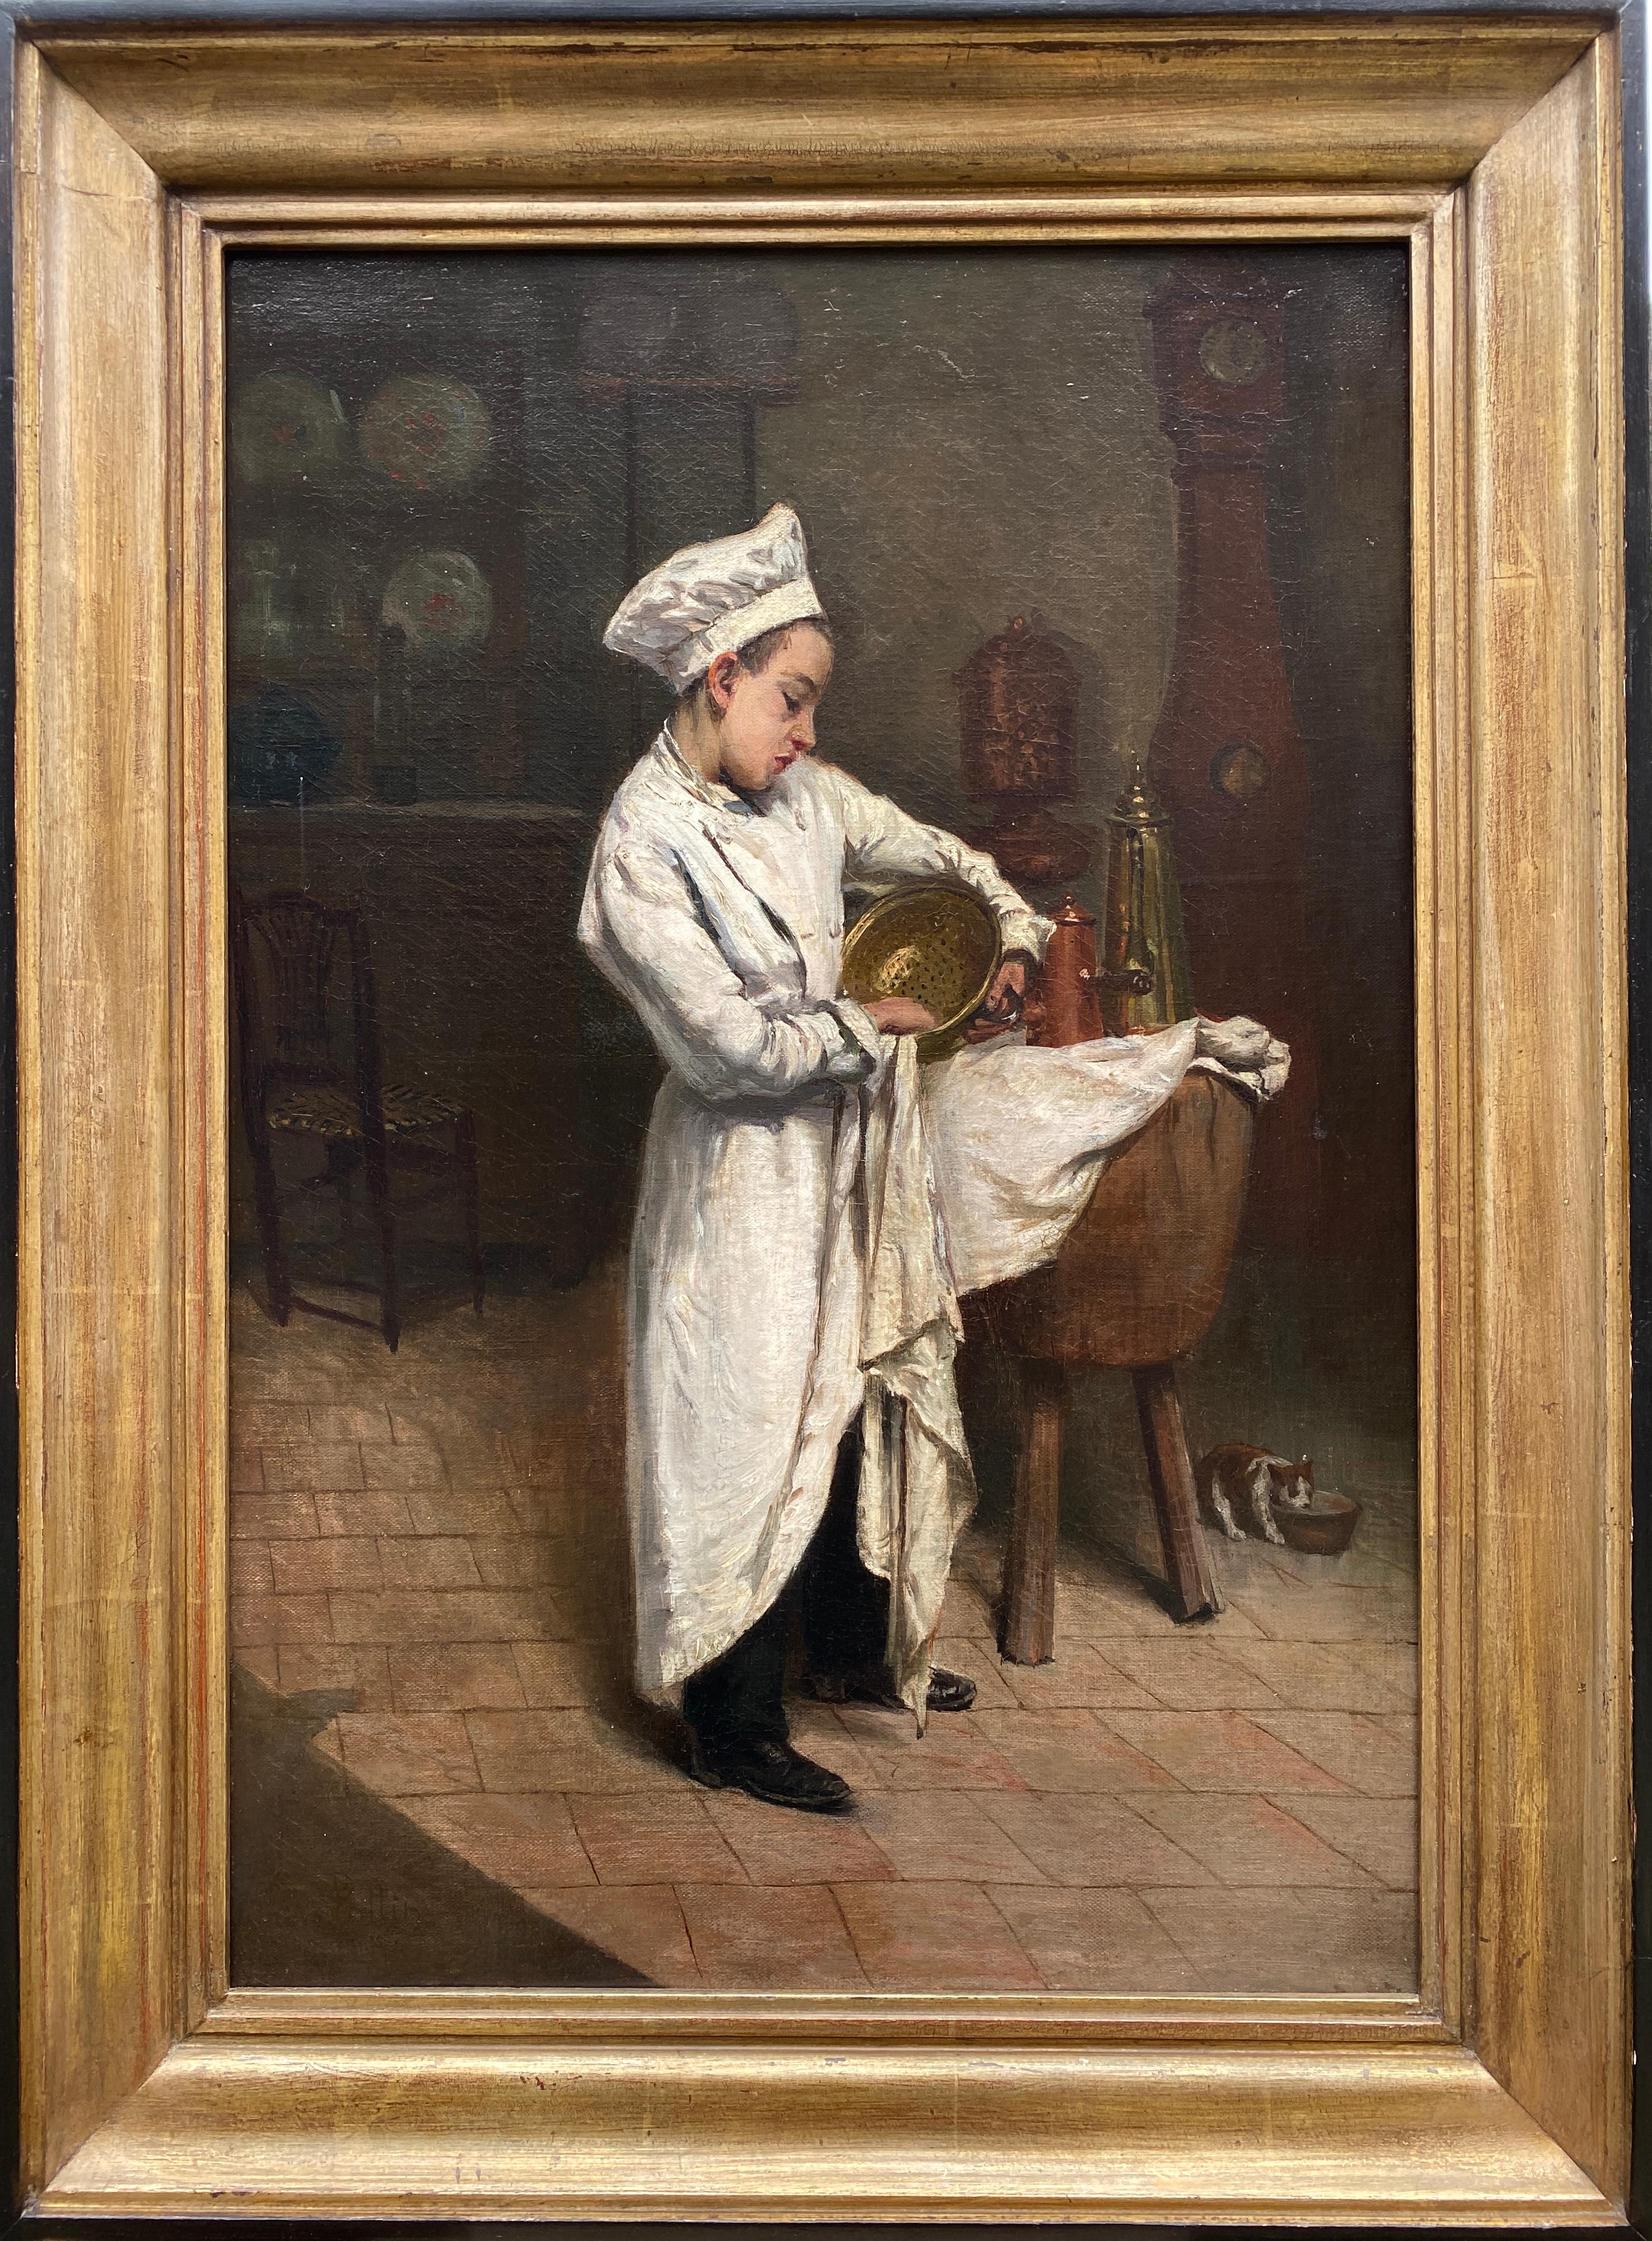 Pottin Henri Interior Painting - Le Petit Patissier, Henri Pottin, Paris 1820 – 1864, French Painter